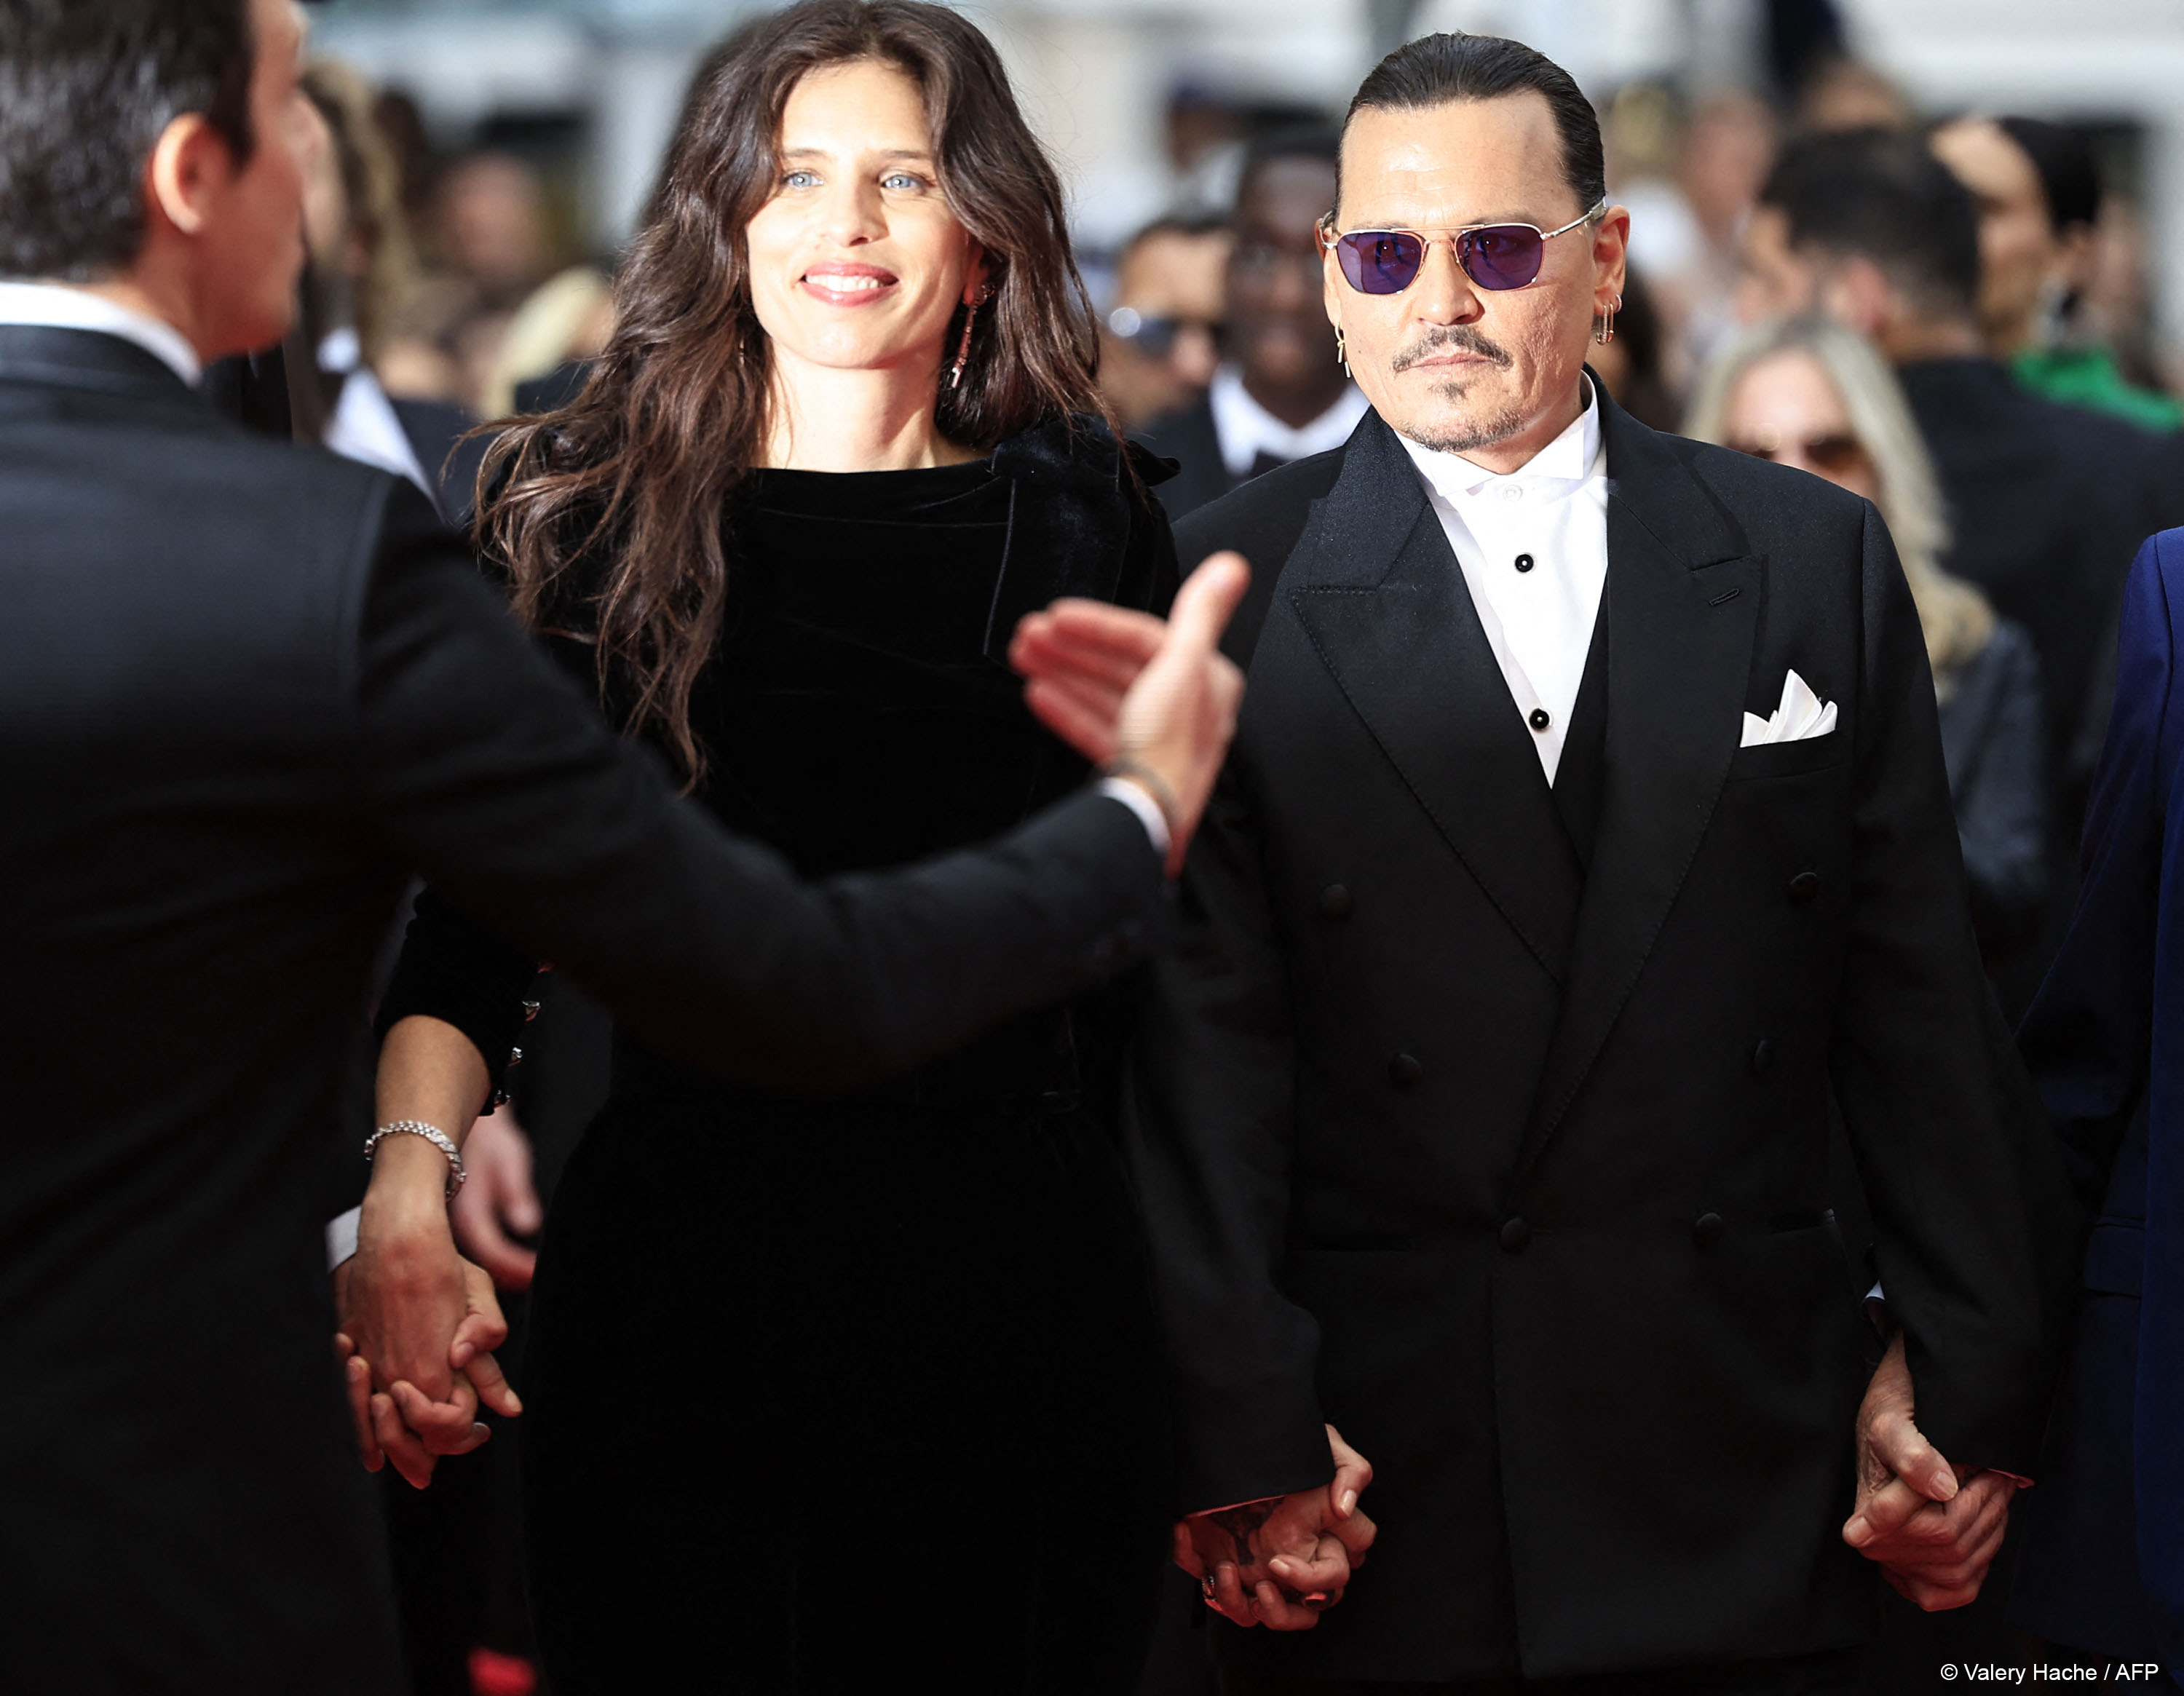 Maïwenn e Johnny Depp chegando no Grand Théâtre Louis Lumière para a estreia de "Jeanne du Barry". Imagem: Valery Hache/AFP.